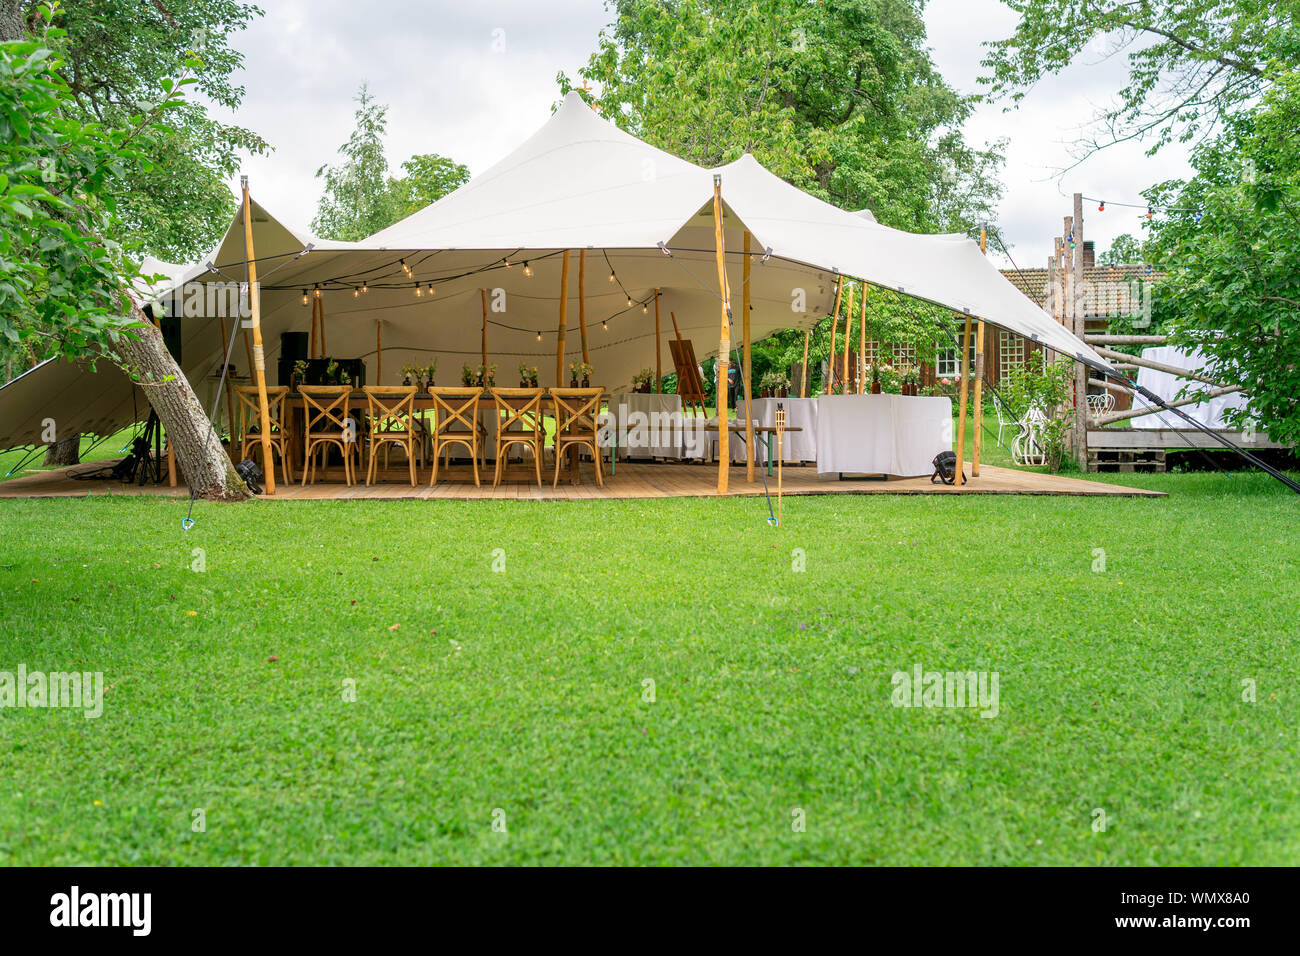 Image de grande tente blanche pour un mariage à l'événement dans la nature Banque D'Images